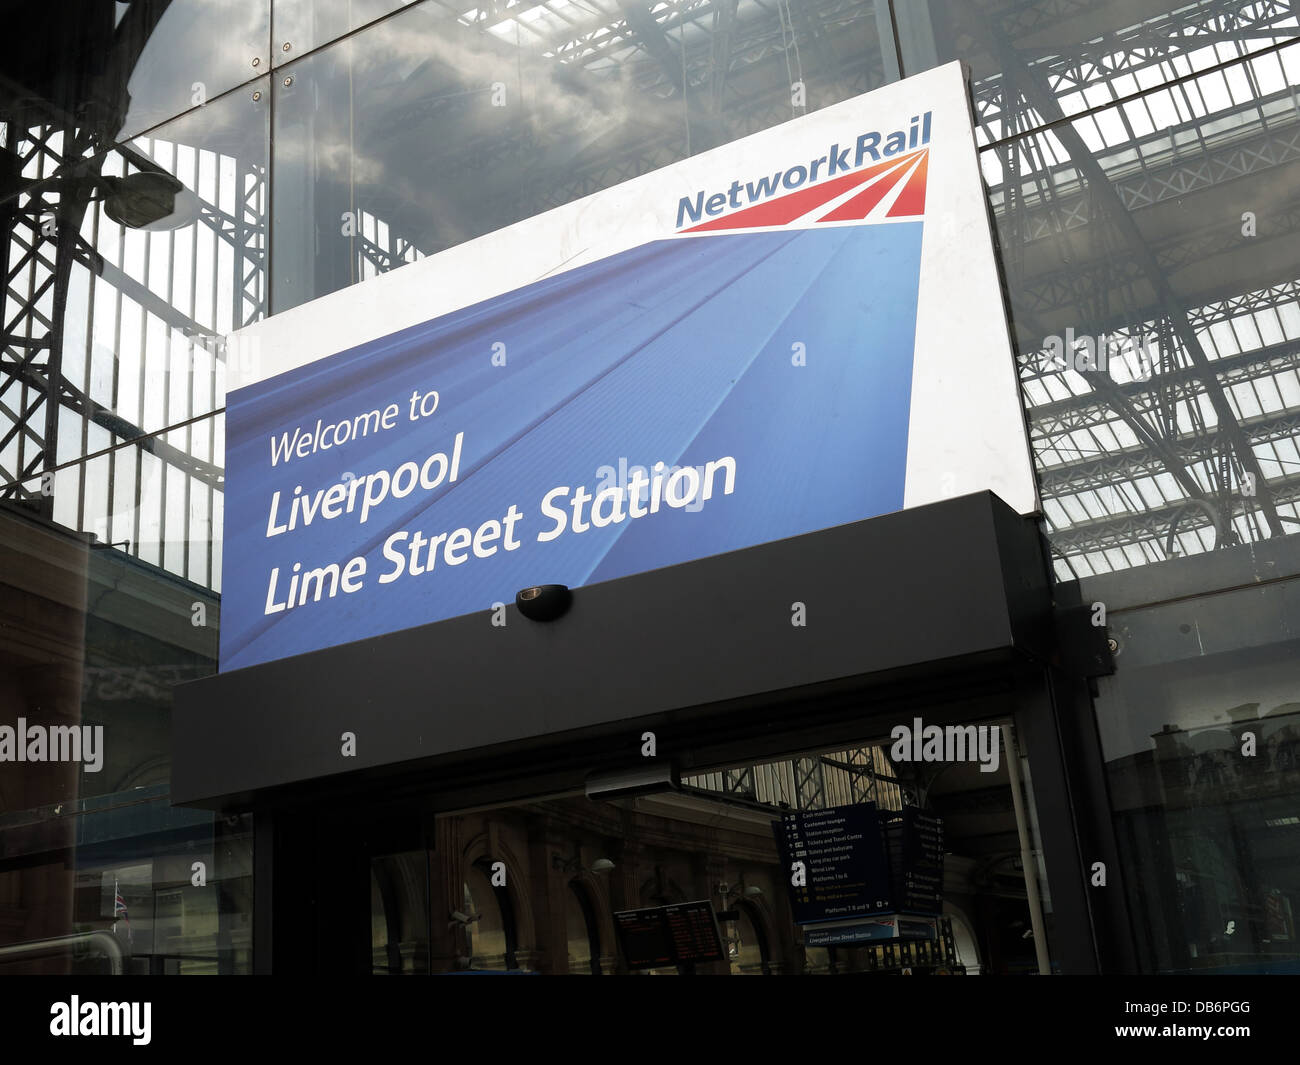 Herzlich Willkommen Sie in Liverpool Lime Street Station Zeichen von Network Rail im englischen Stadt vor Baldachin von Hauptbahnhof Stockfoto